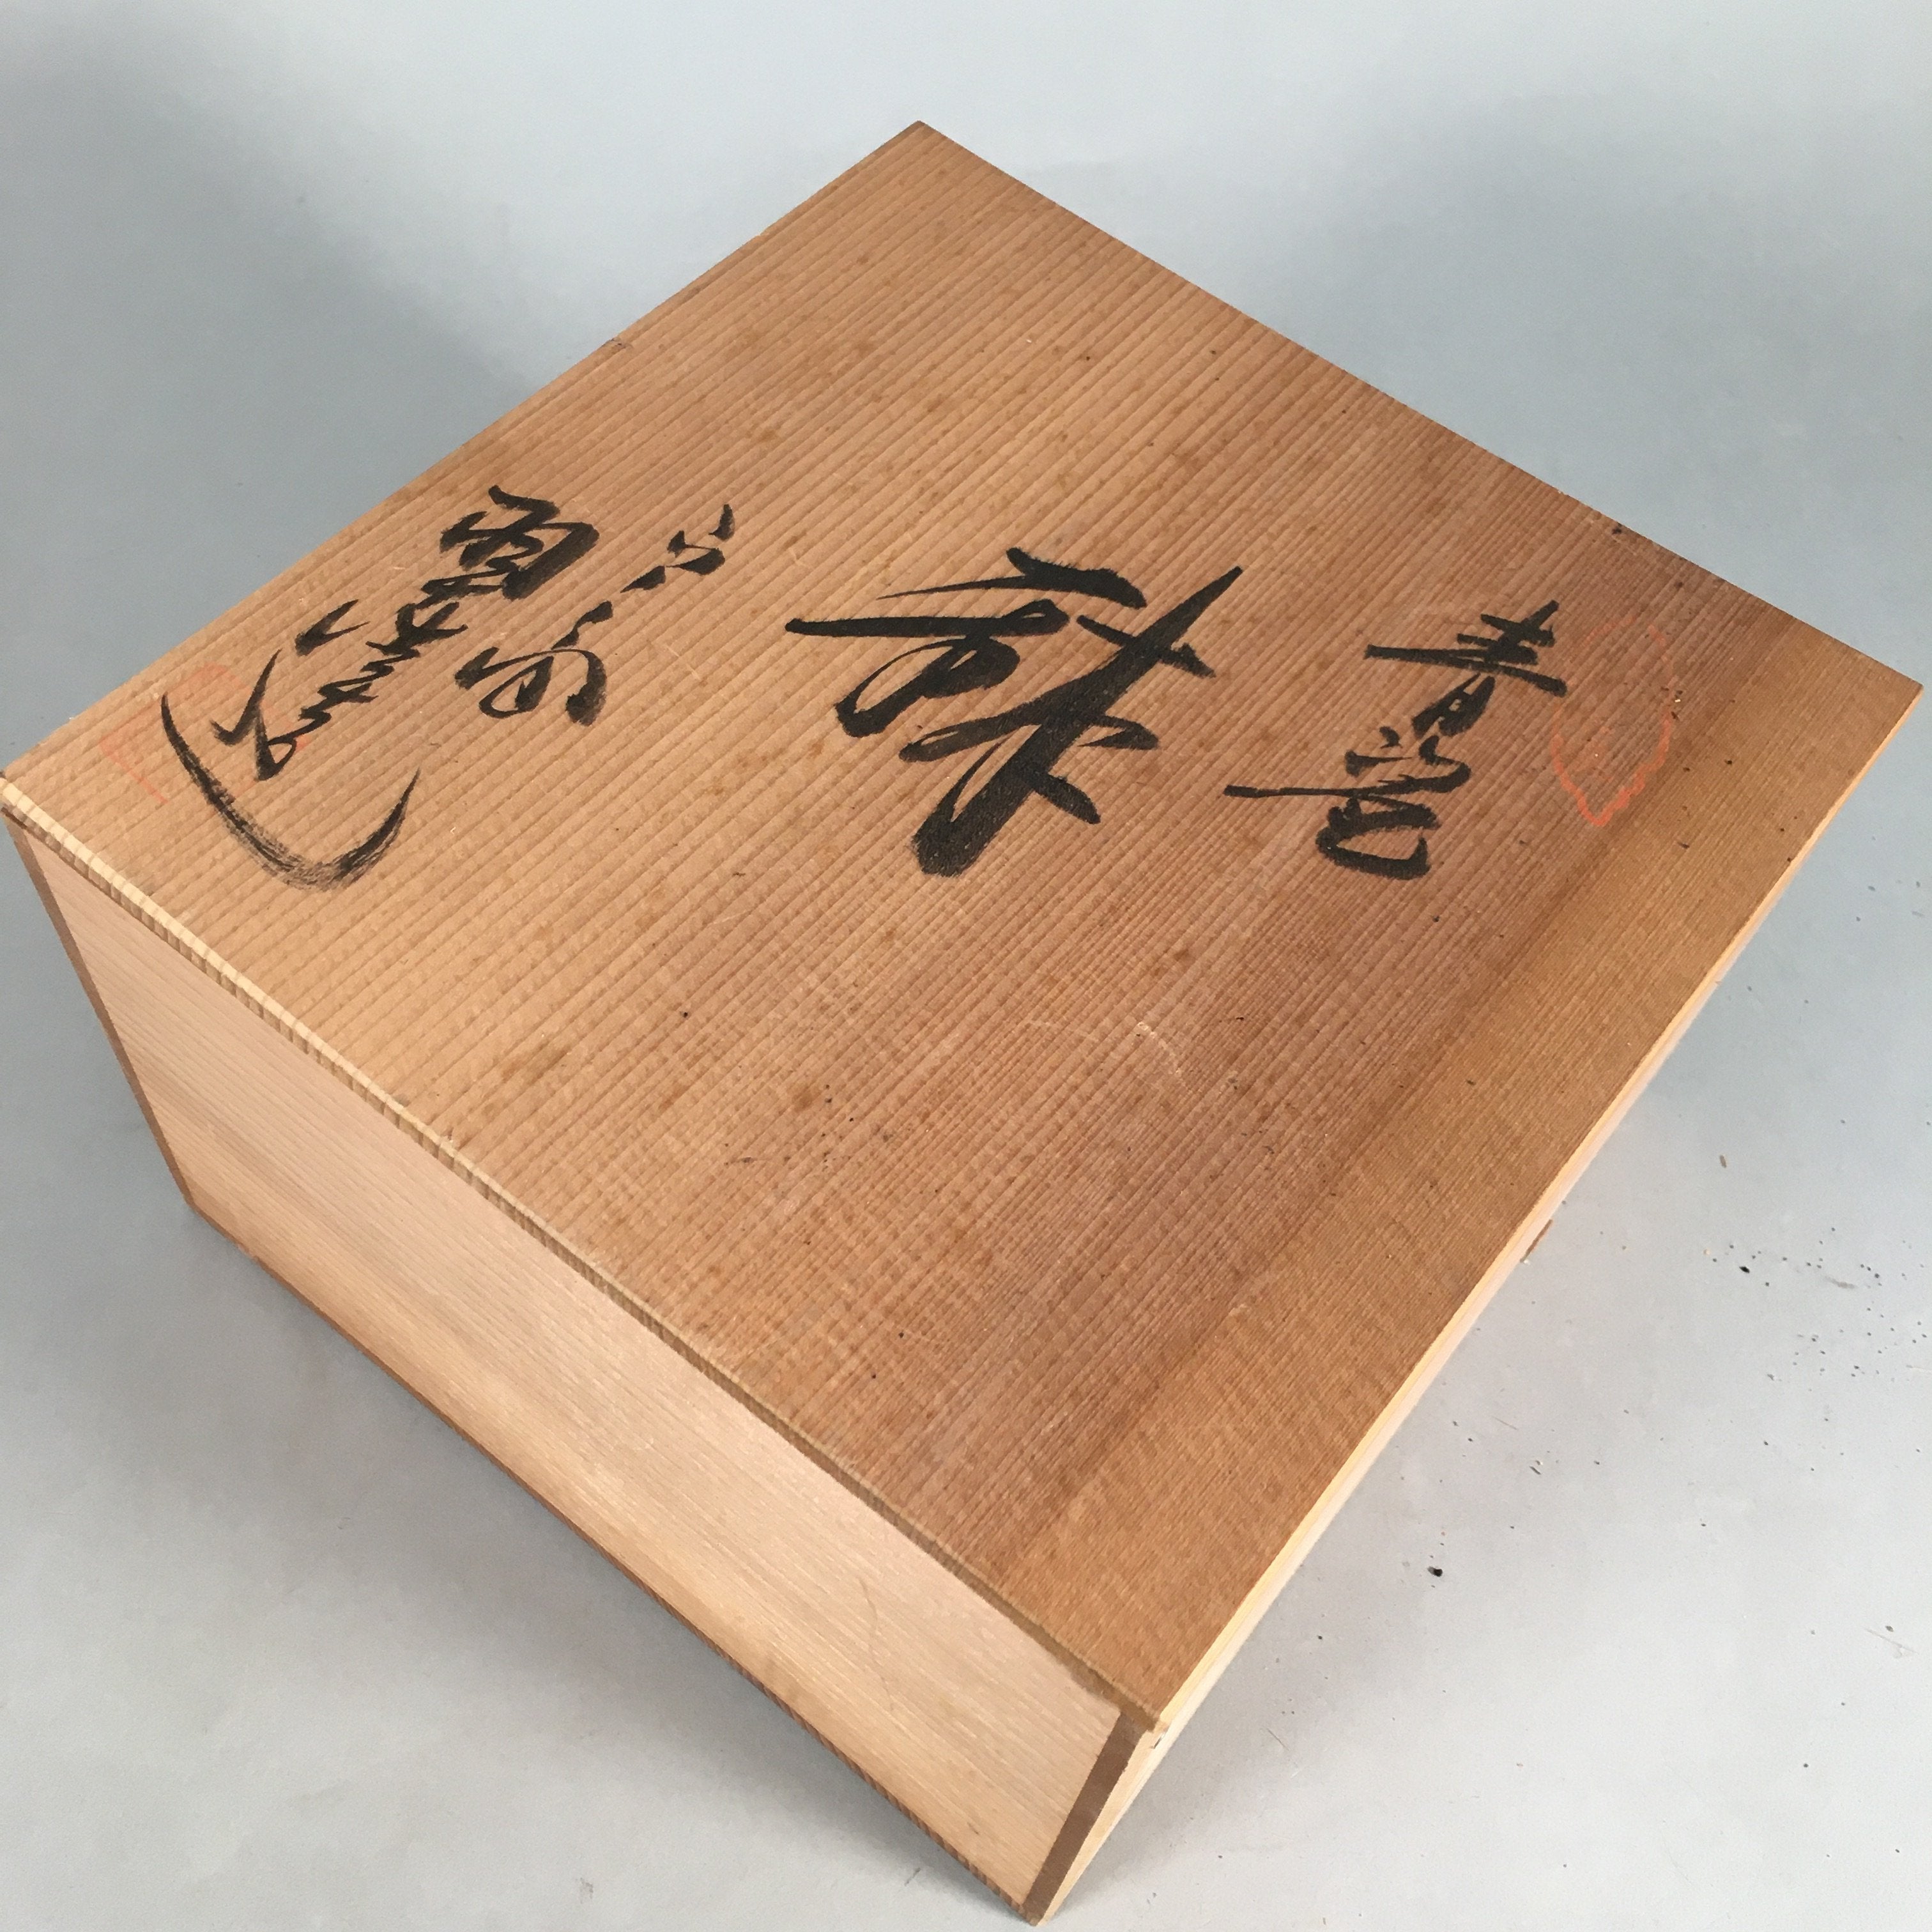 Japanese Wooden Storage Box Pottery Vtg Hako Inside 19.5x20x12cm WB762